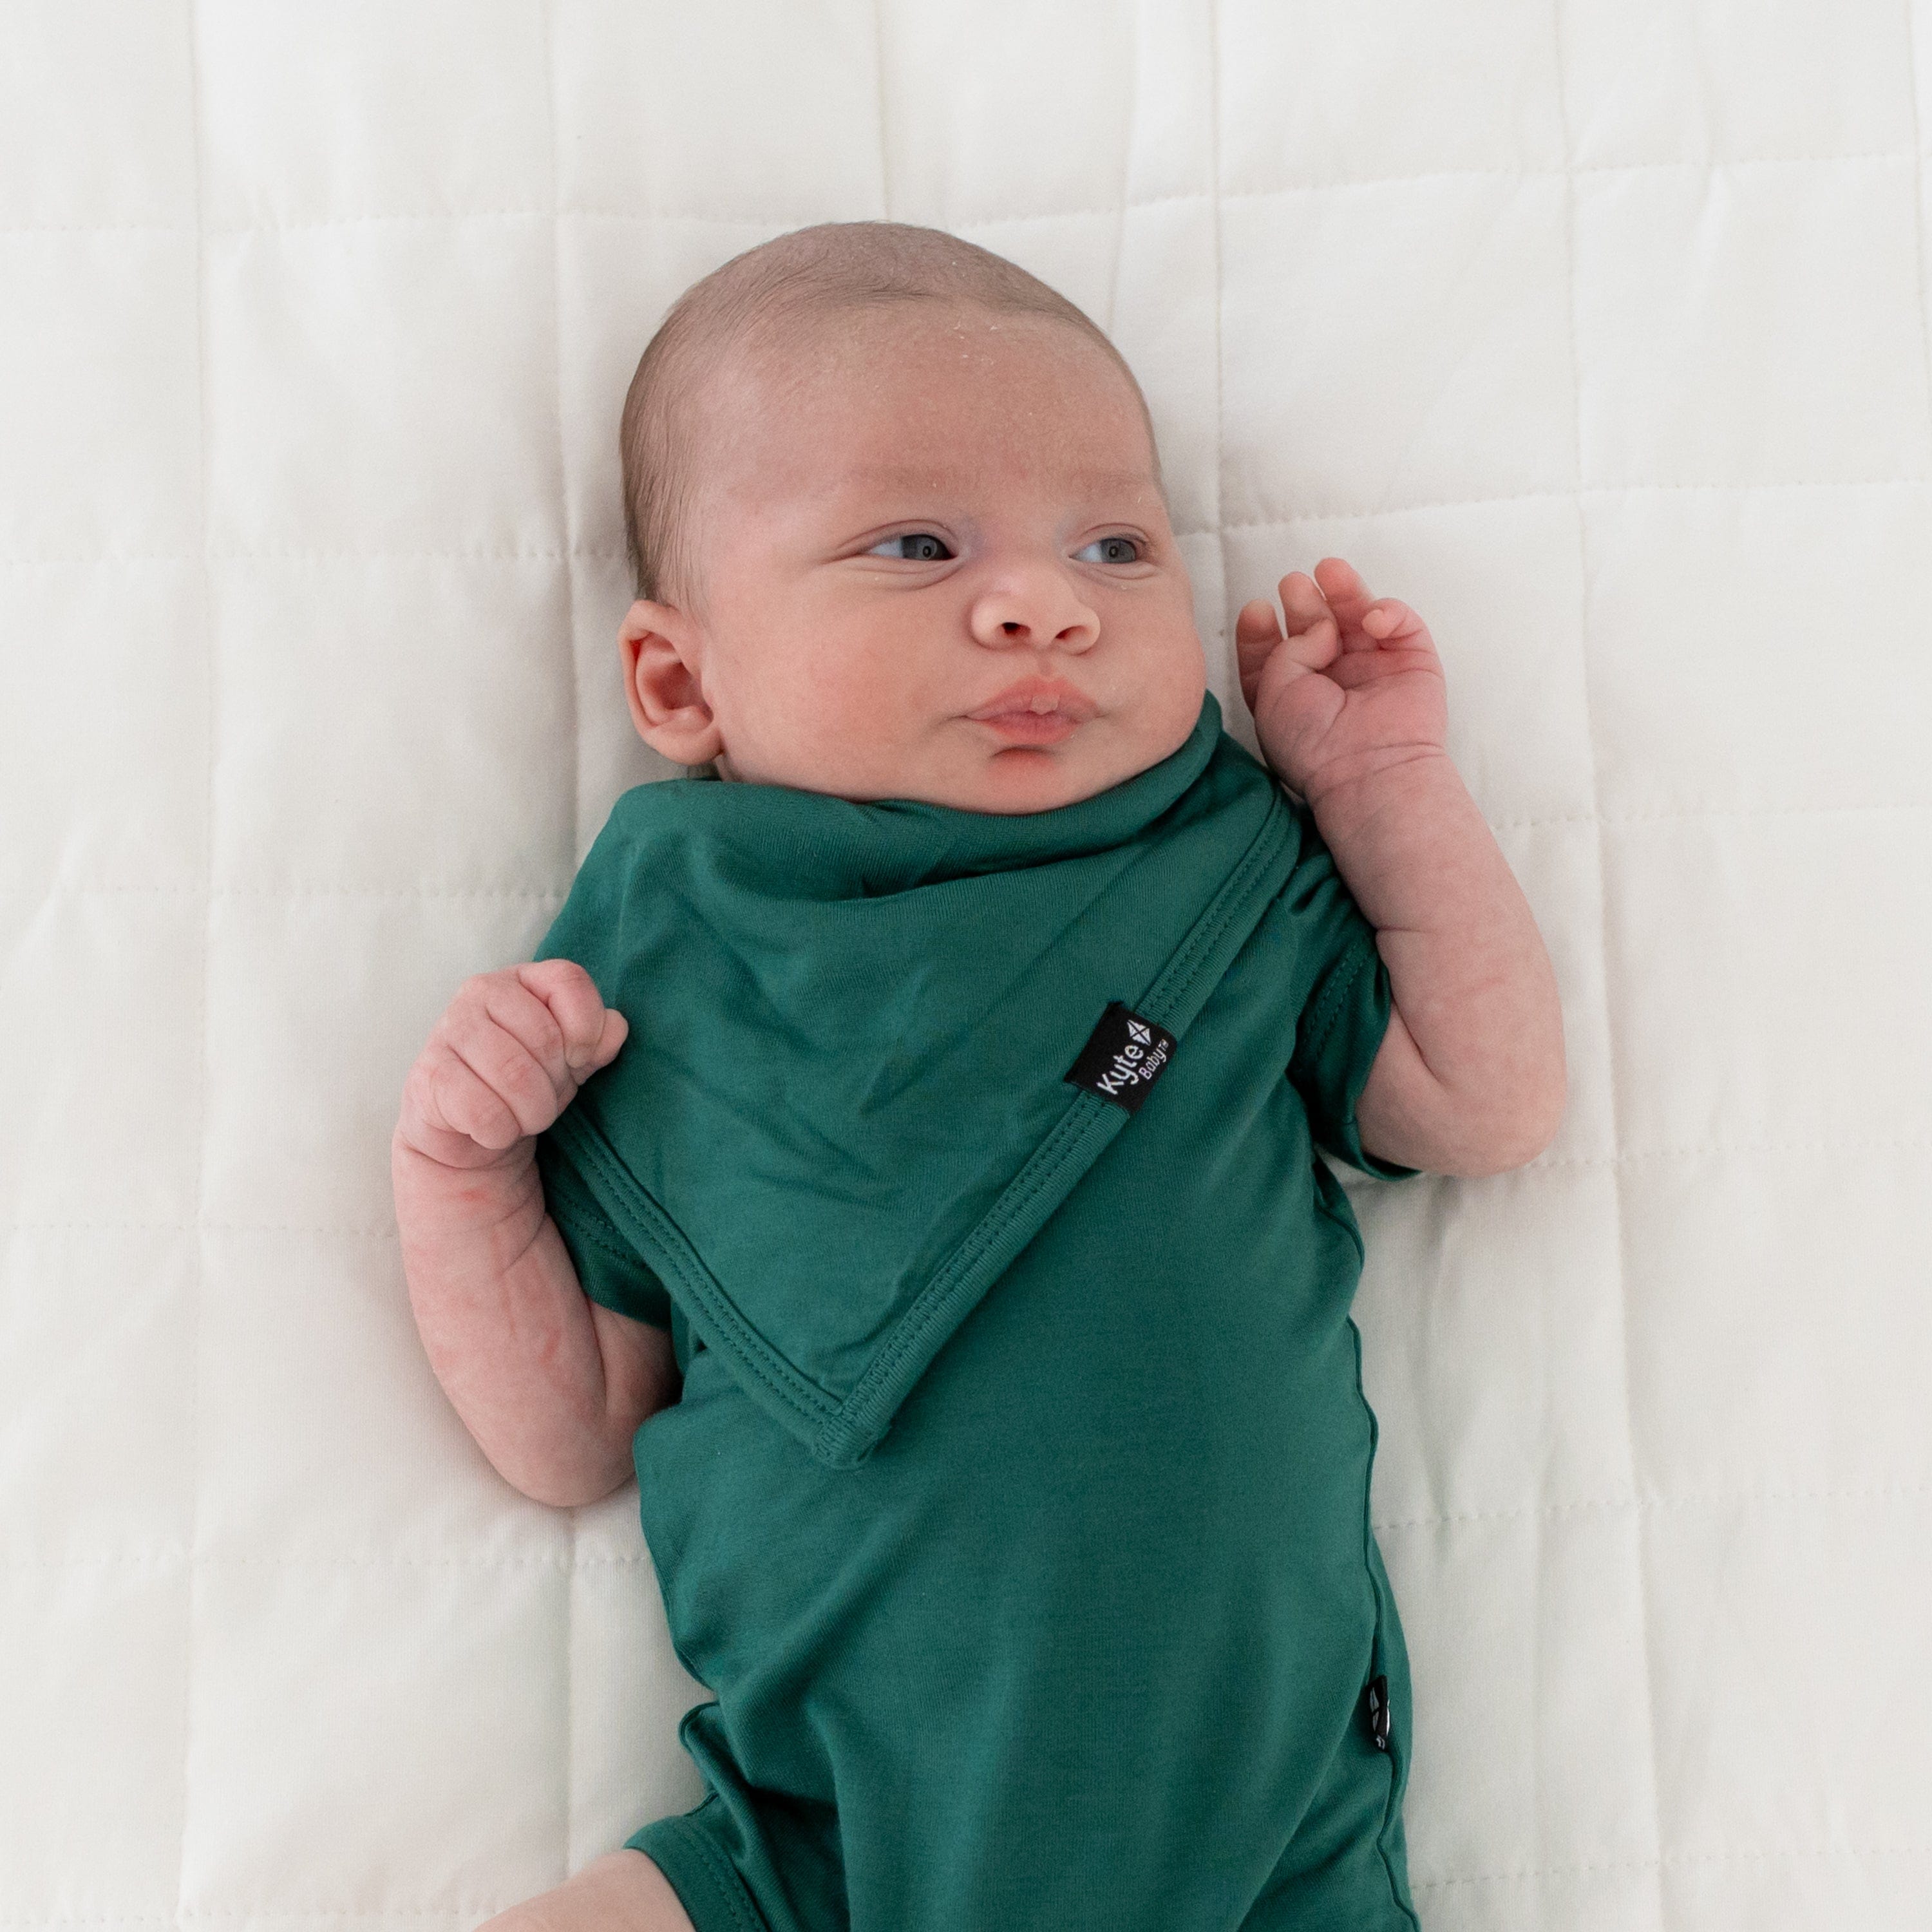 Infant wearing Kyte Baby Bib in Emerald green